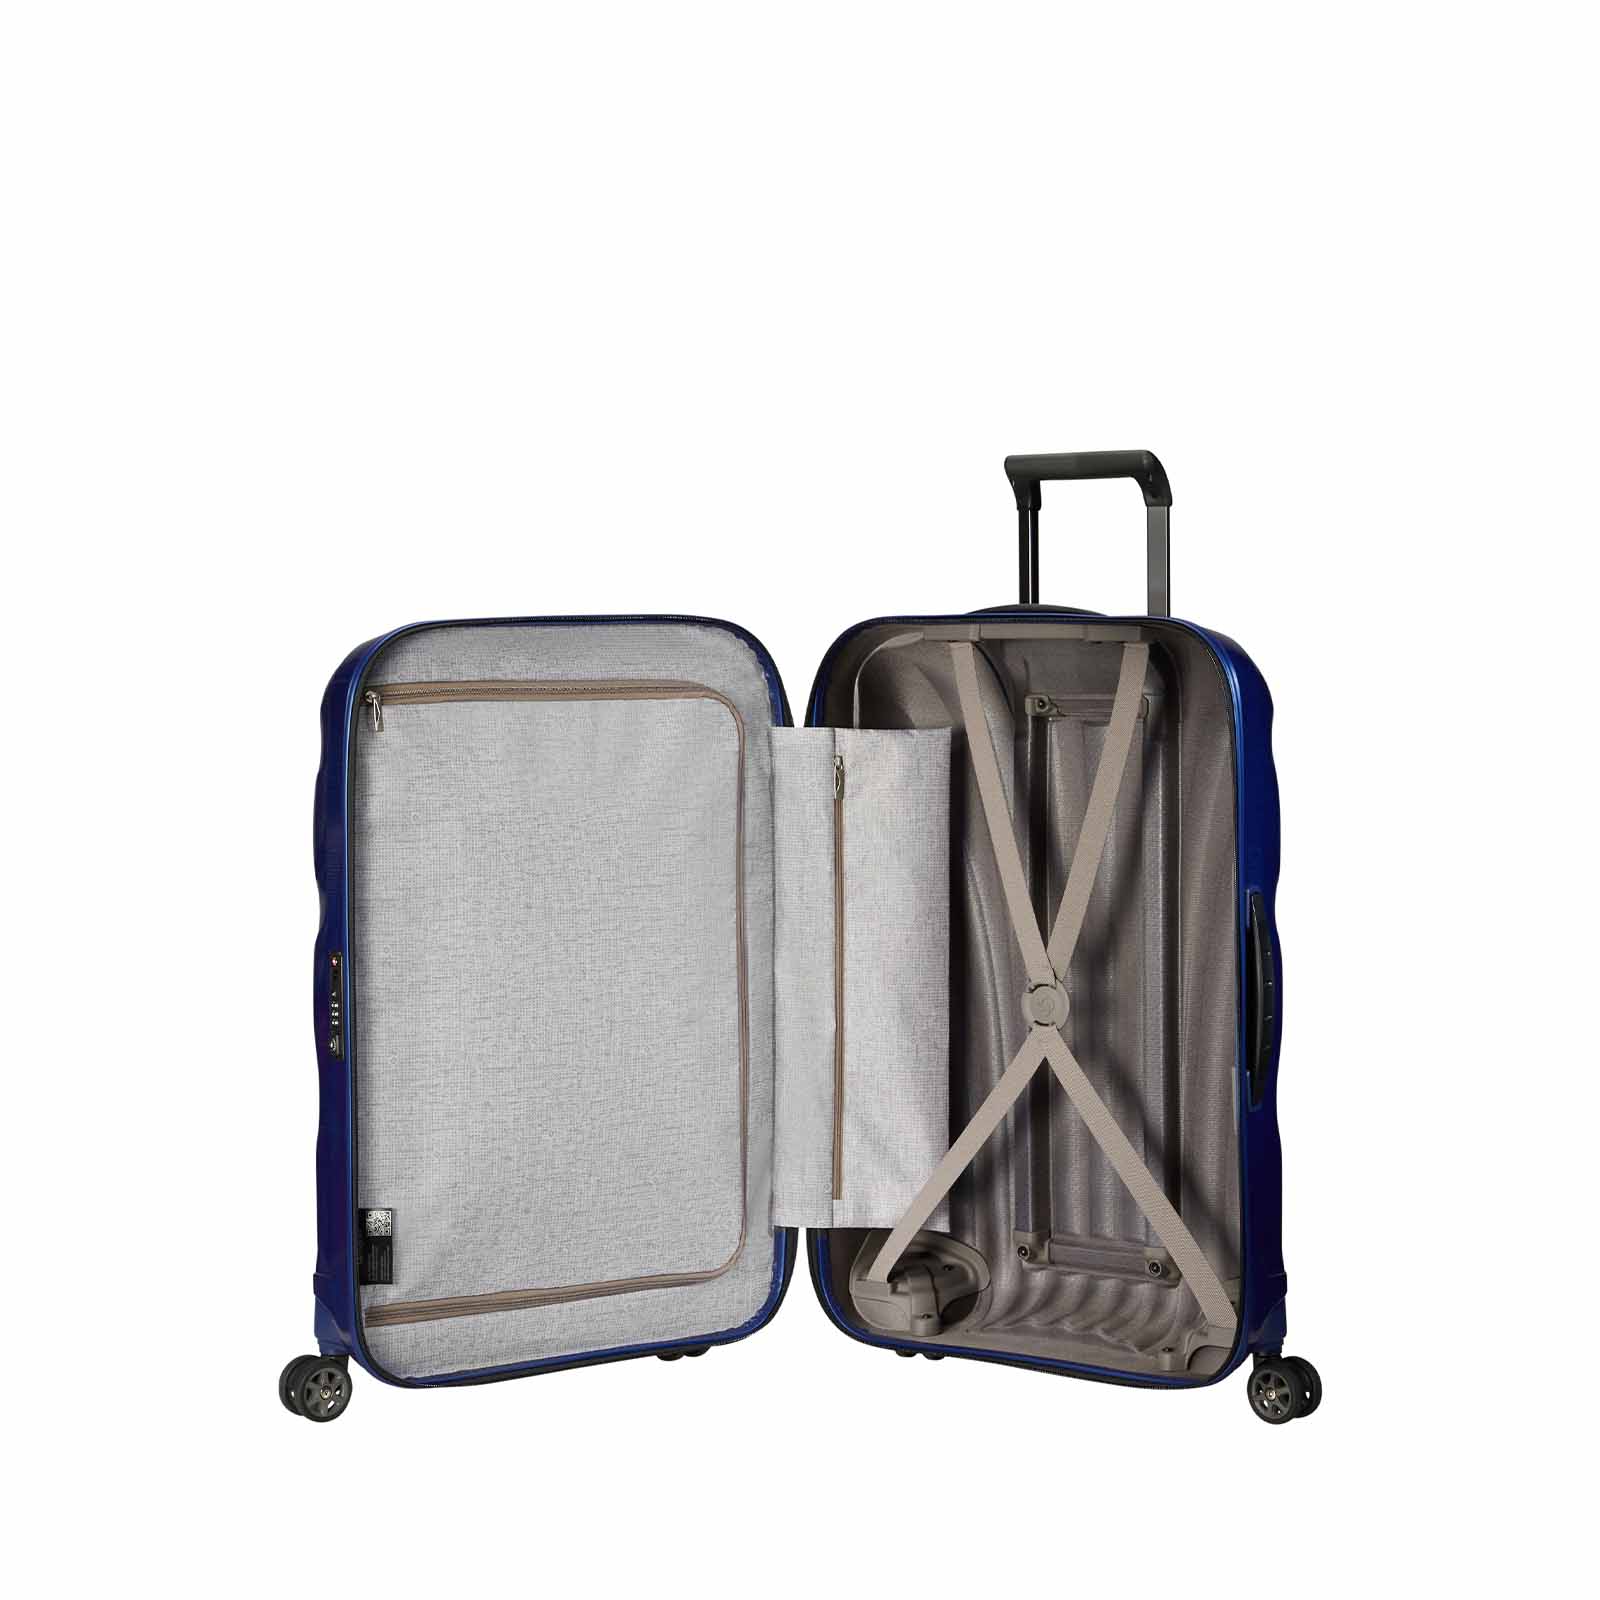 Samsonite-C-Lite-75cm-Suitcase-Midnight-Blue-Open